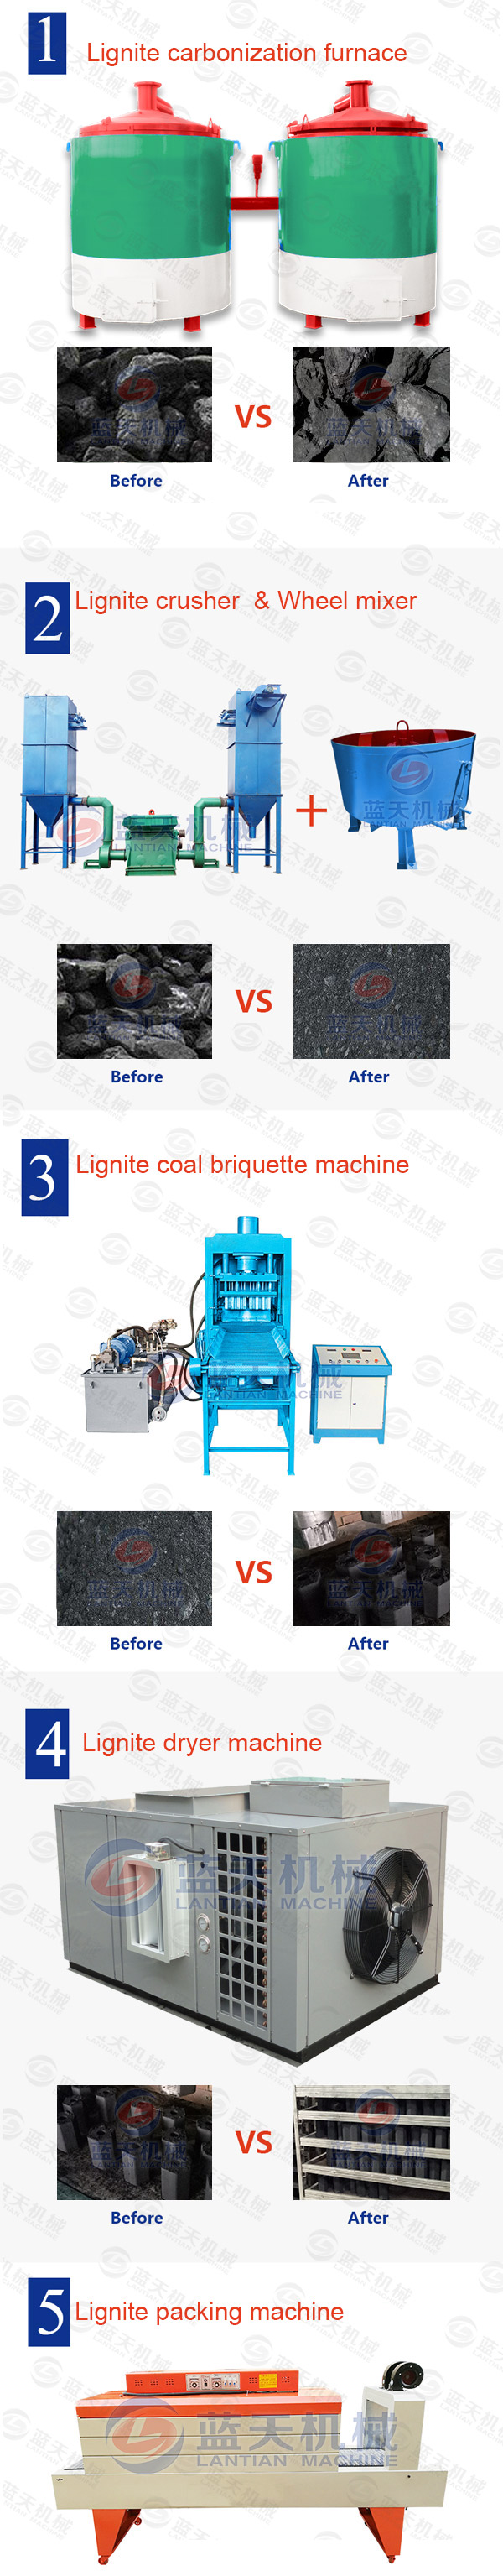 Lignite Coal Briquette Machine Production Line